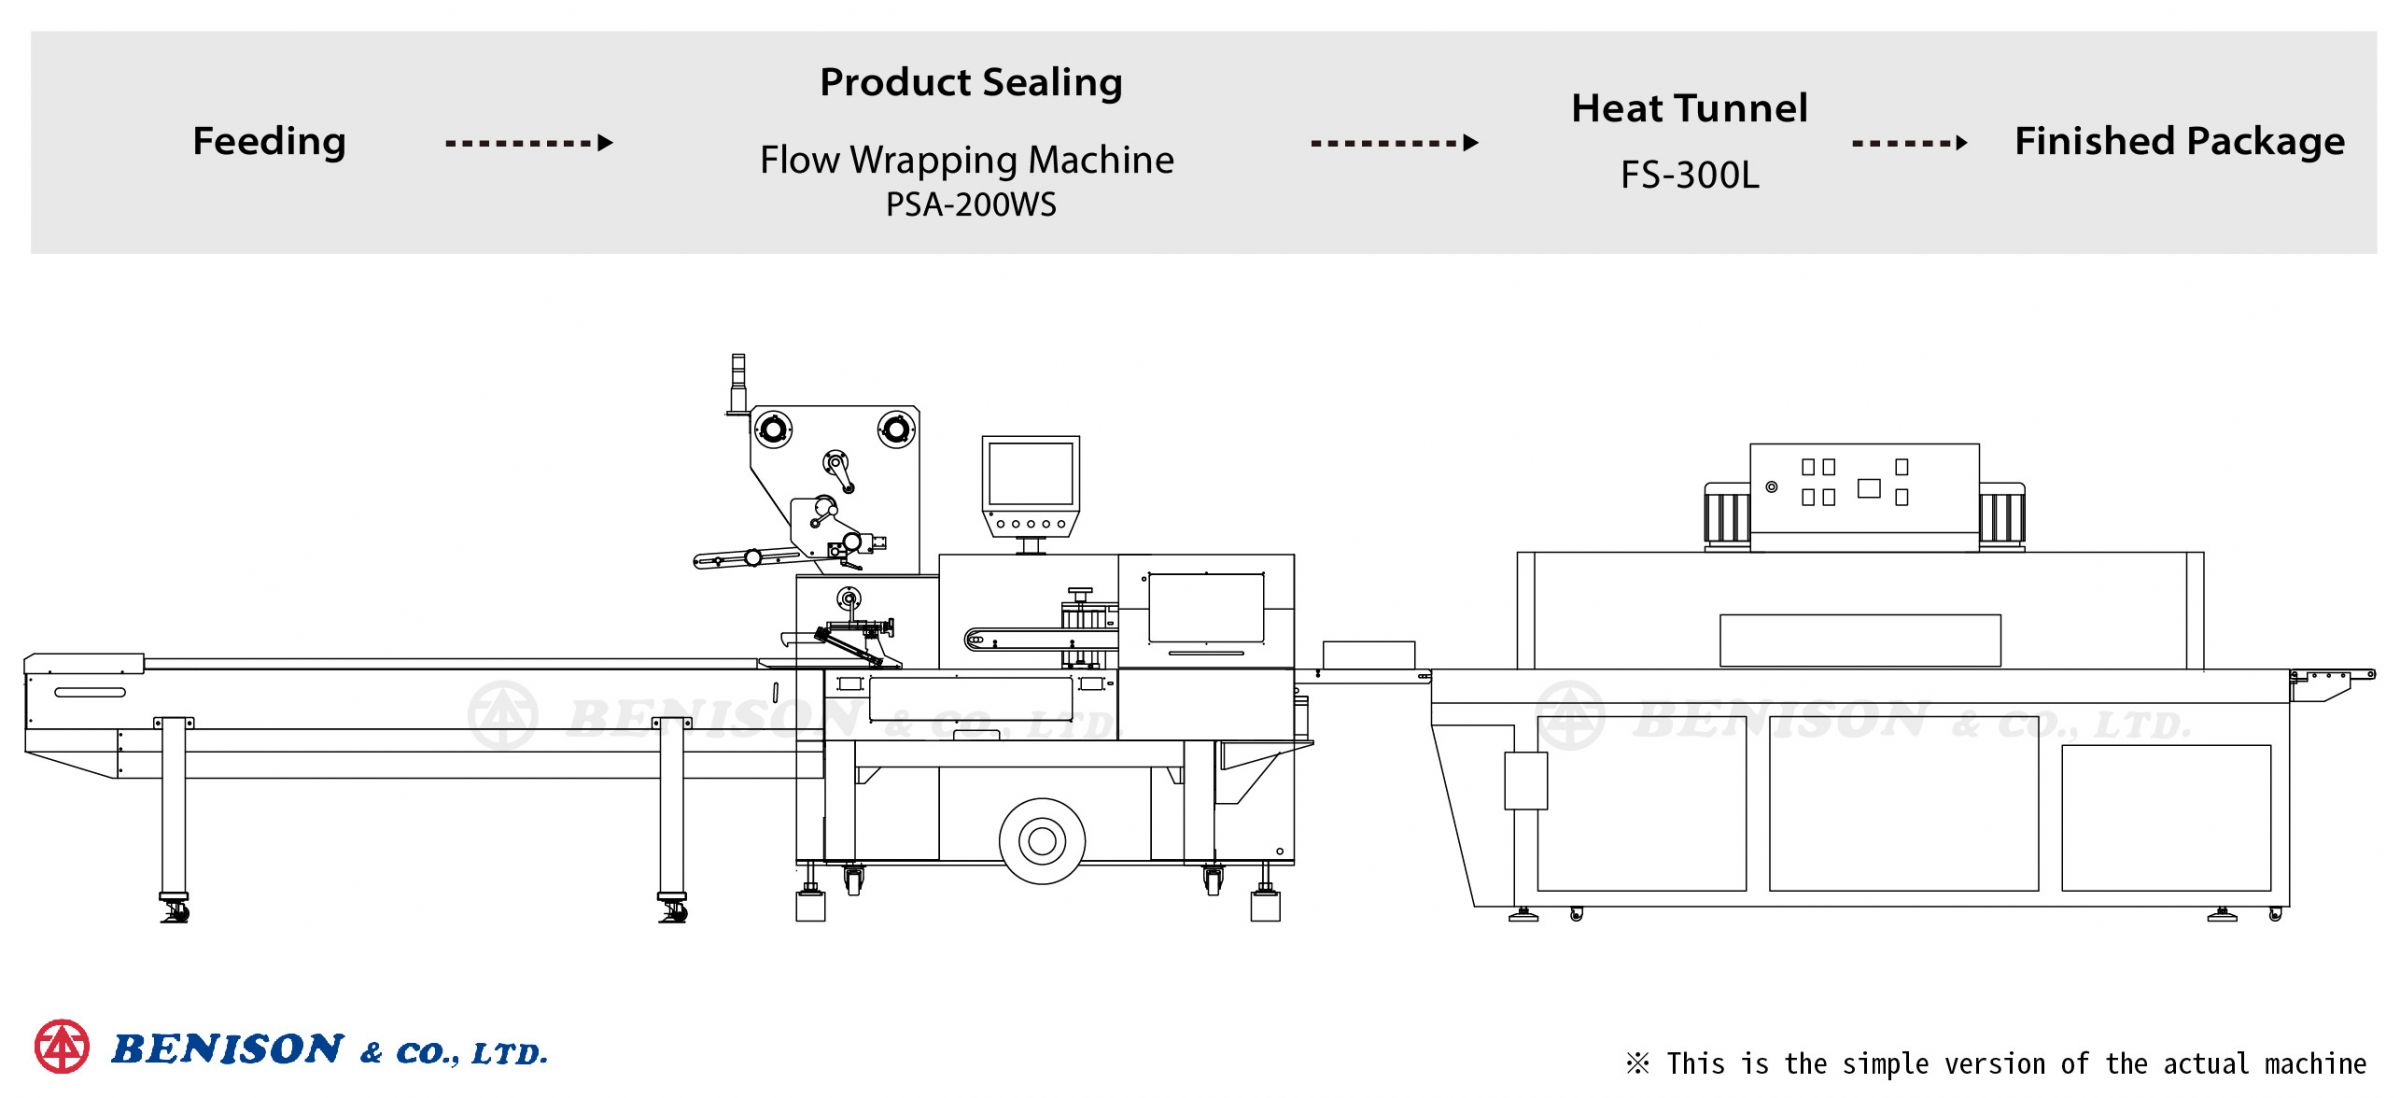 Fiş Kapağı Ürün Çözümleri için Flow Wrapping Makinesi PSA-200WS + Isı Tüneli FS-300L